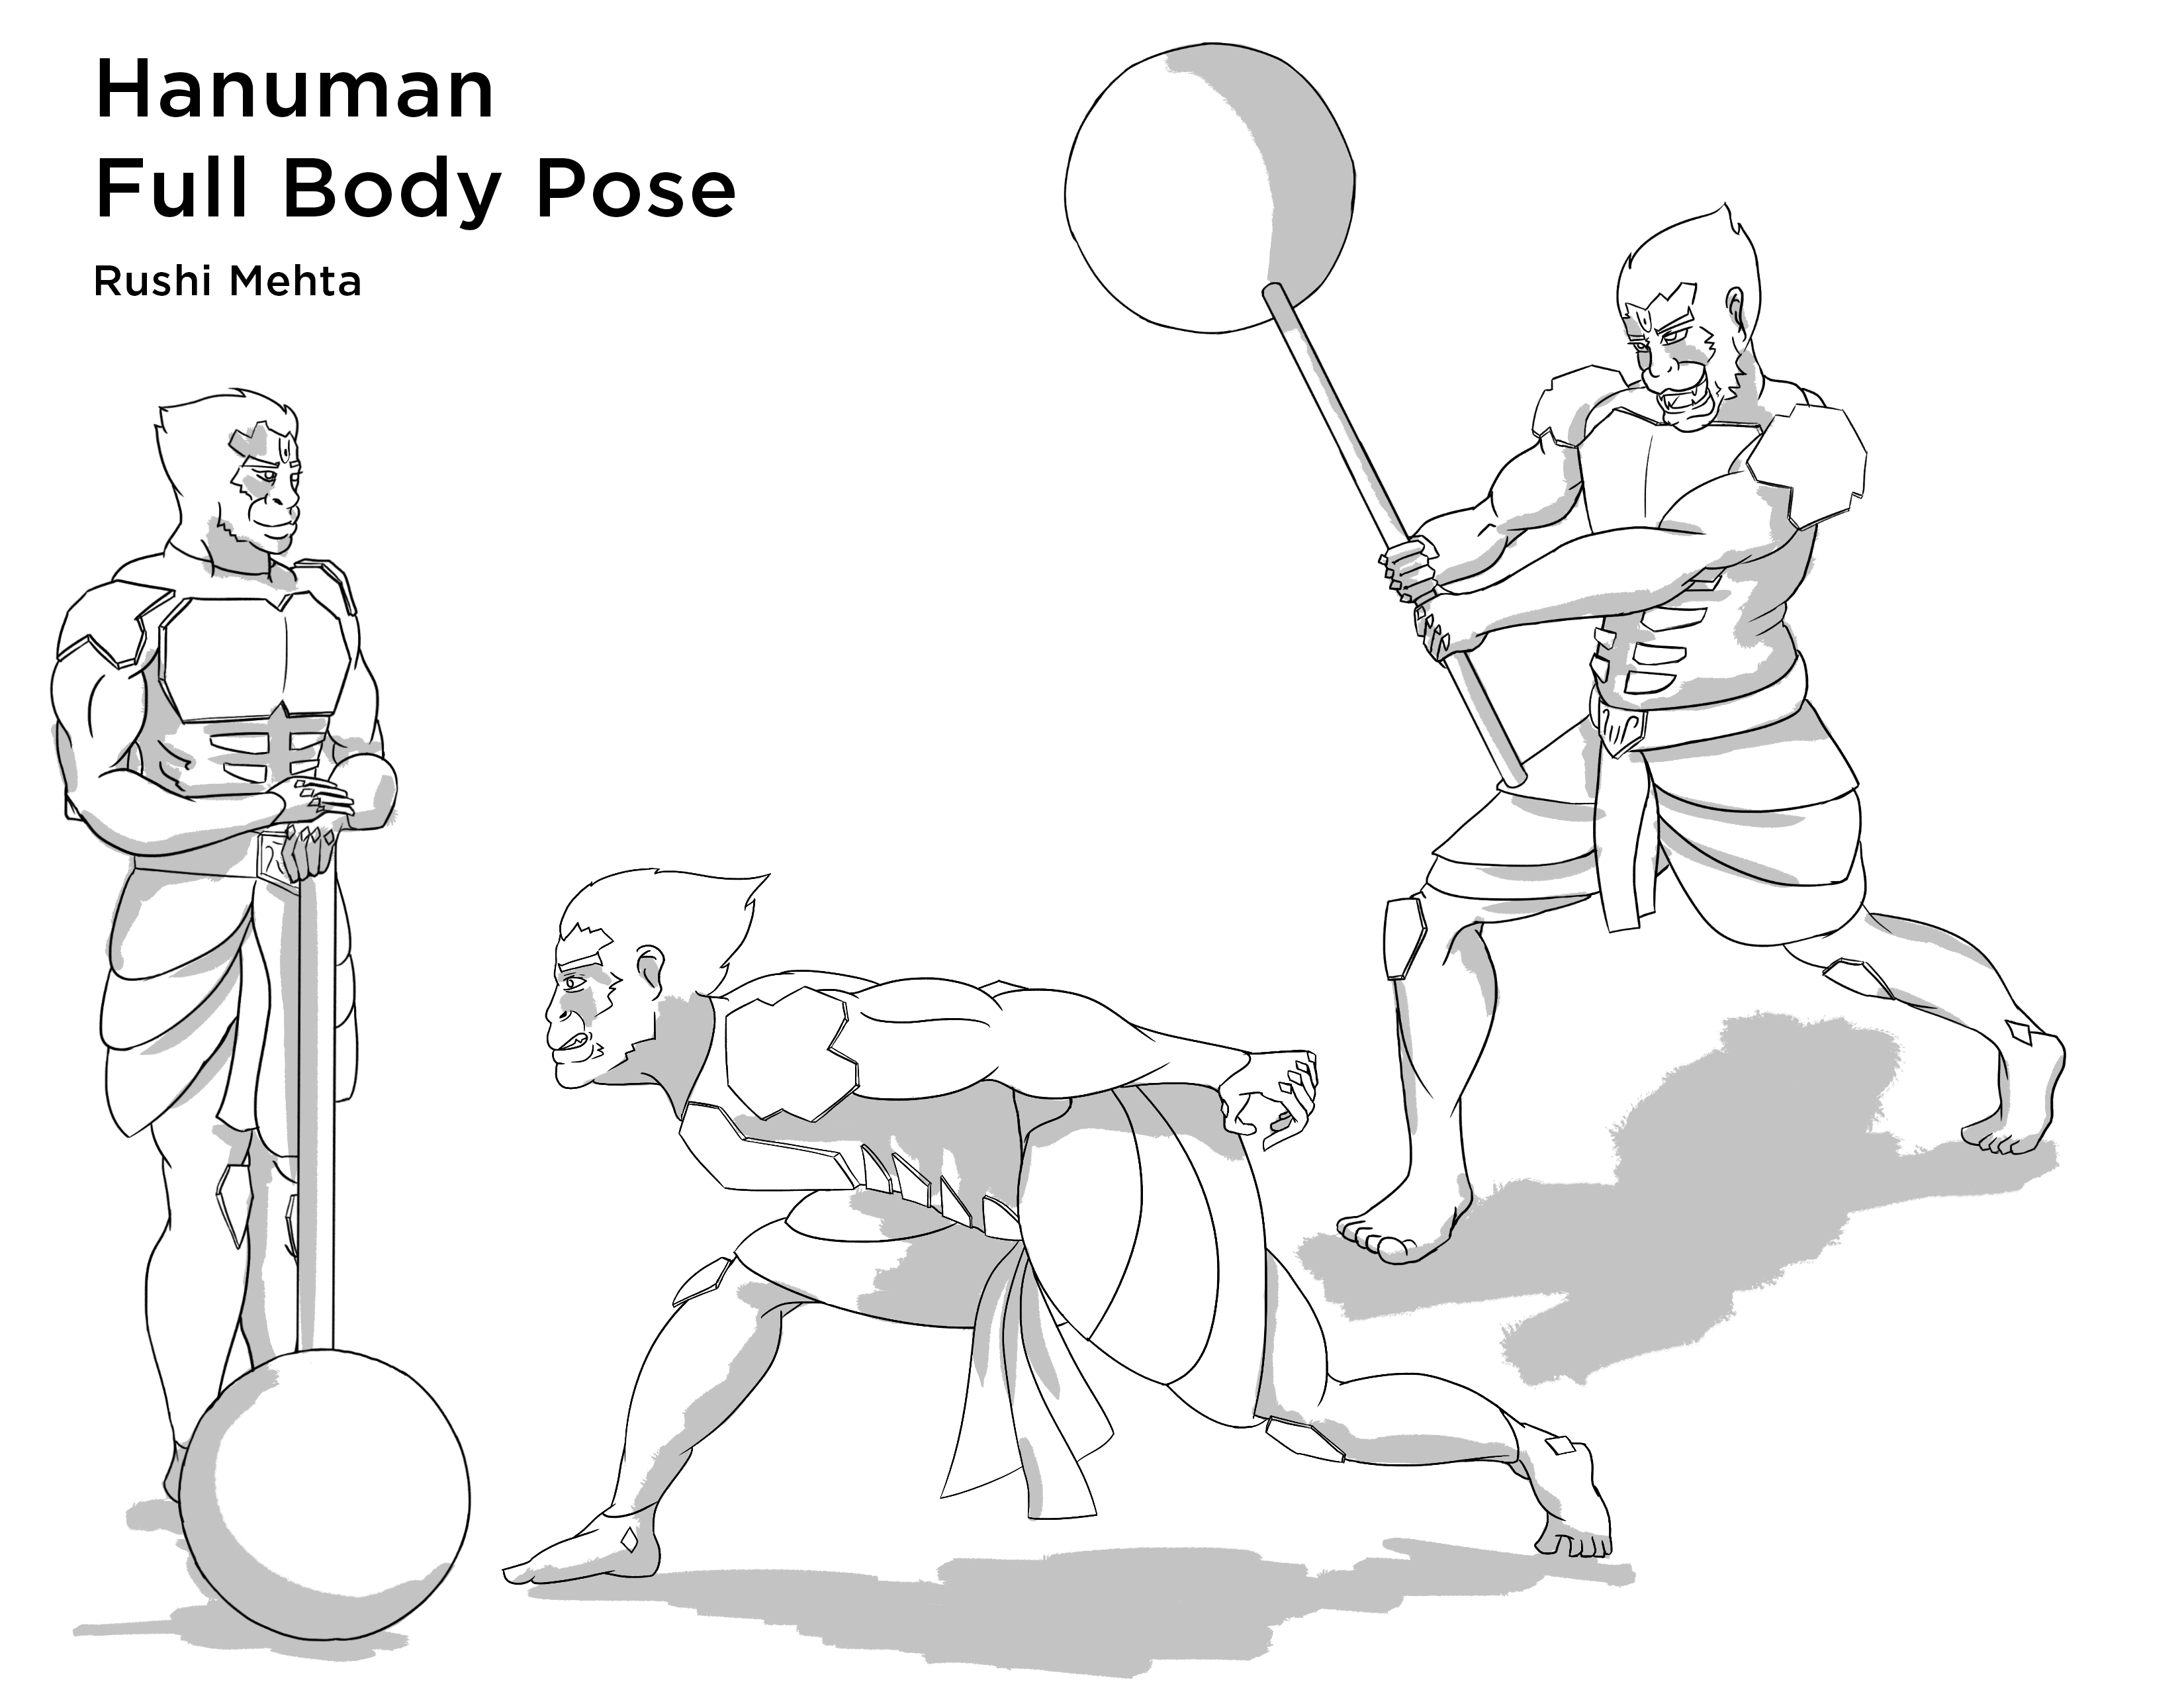 Hanuman Full Body Pose